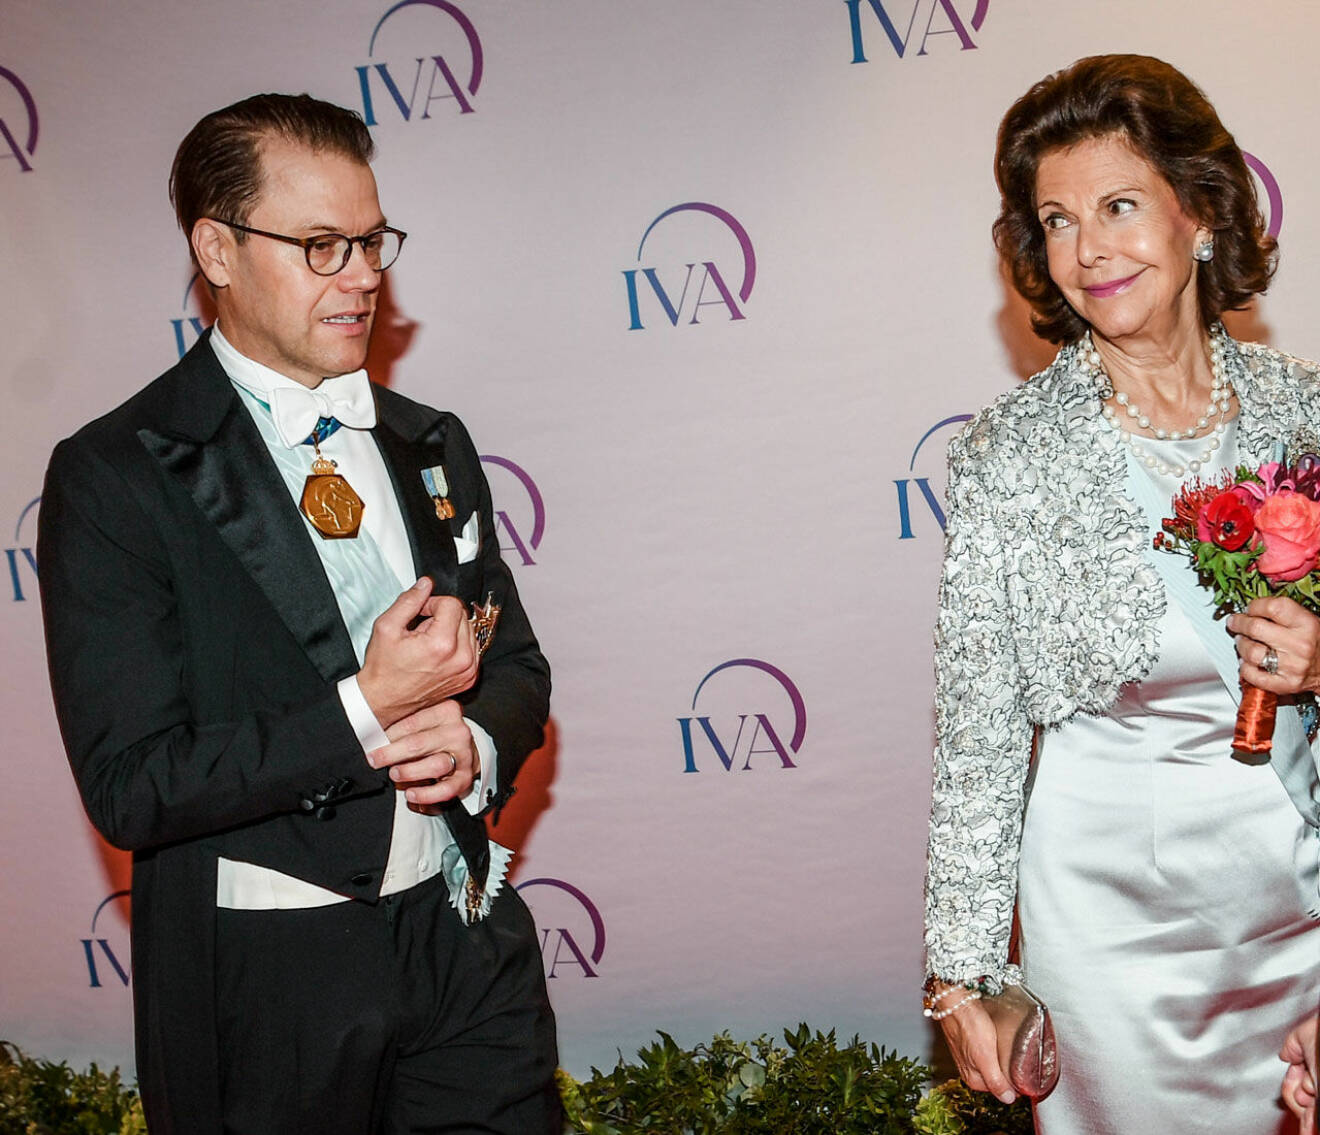 Drottning Silvia och prins Daniel på IVA:s 100-årsfest.